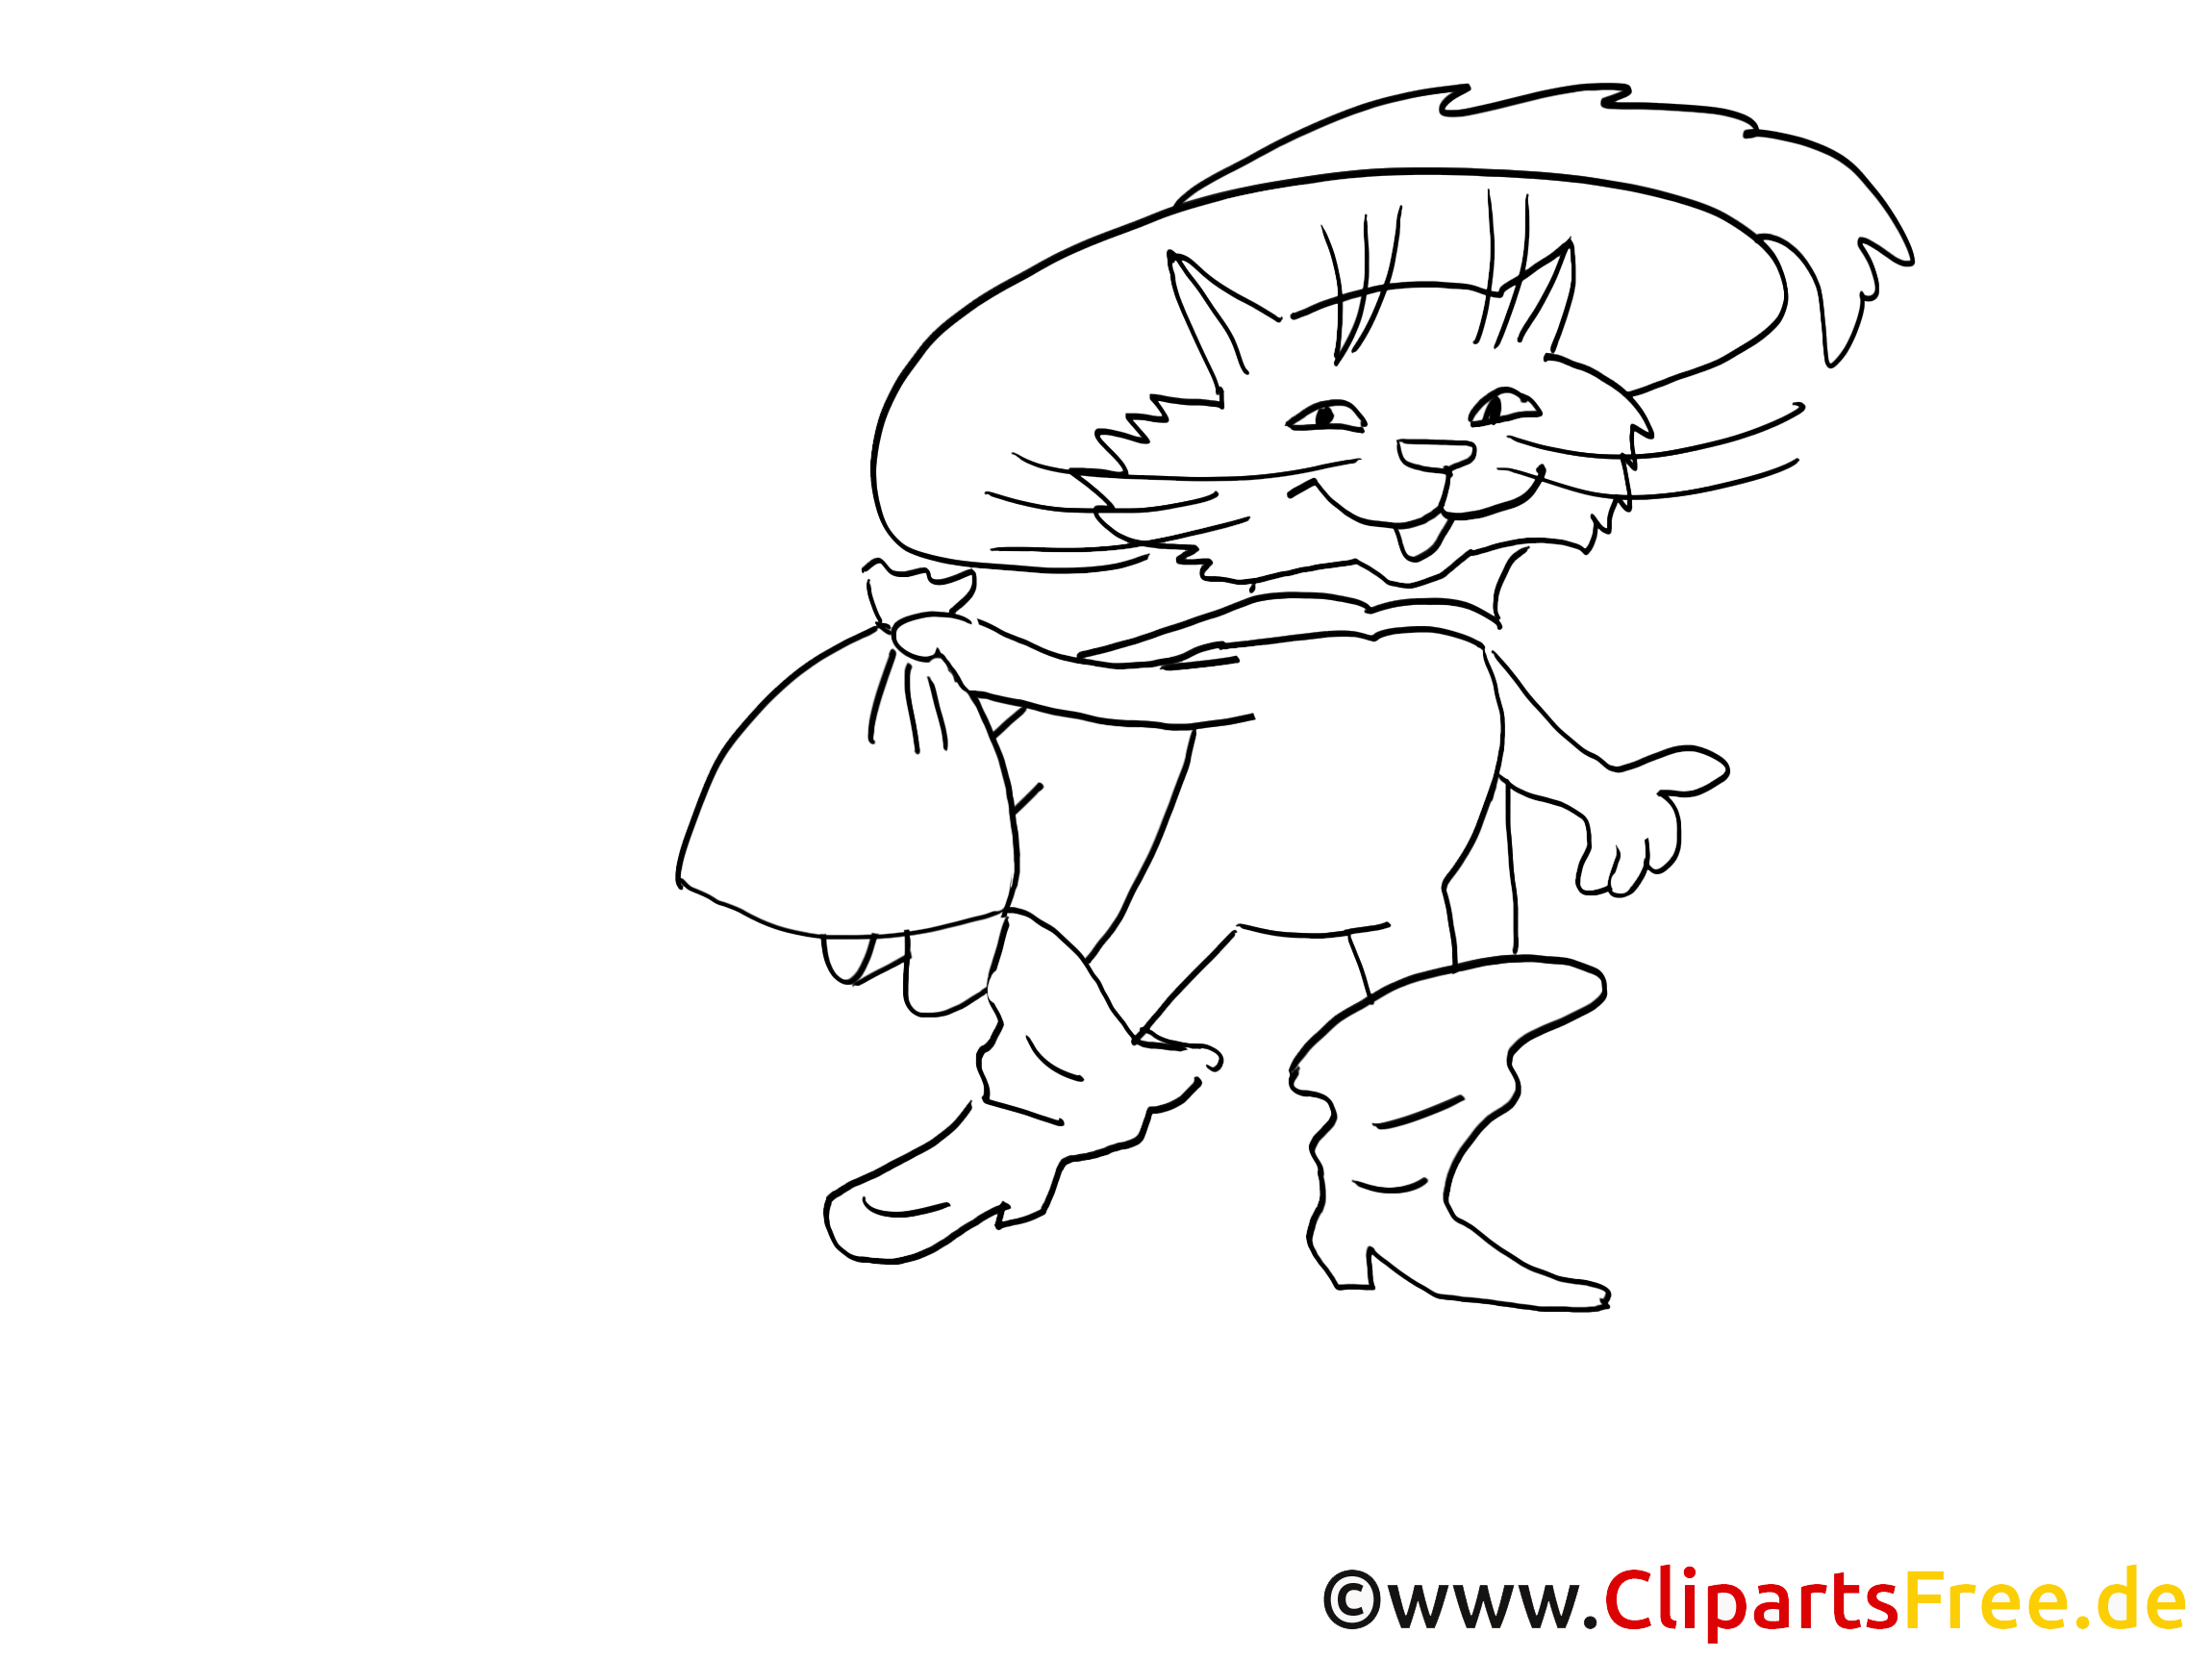 Раскраска кота в сапогах из сказки Шарля Перро. Кот в сапогах рисунок для детей.